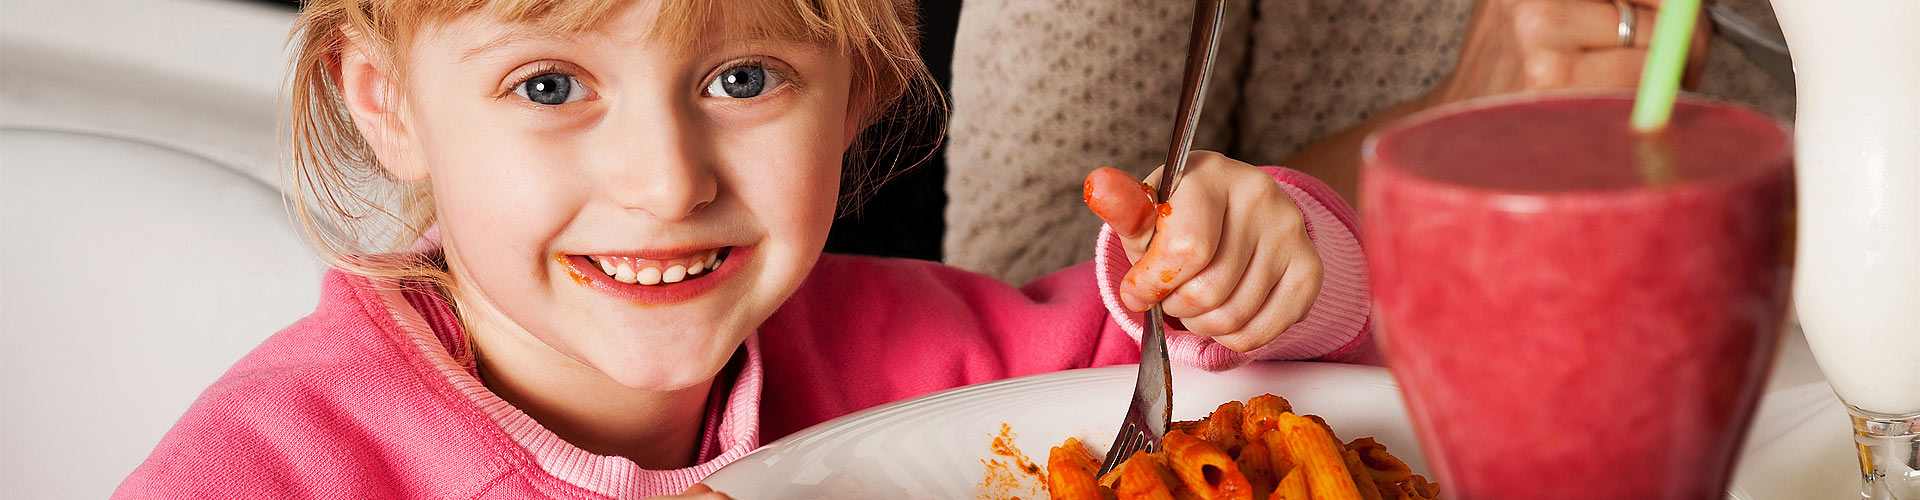 Restaurantes baratos para ir con niños en Castilla - La Mancha